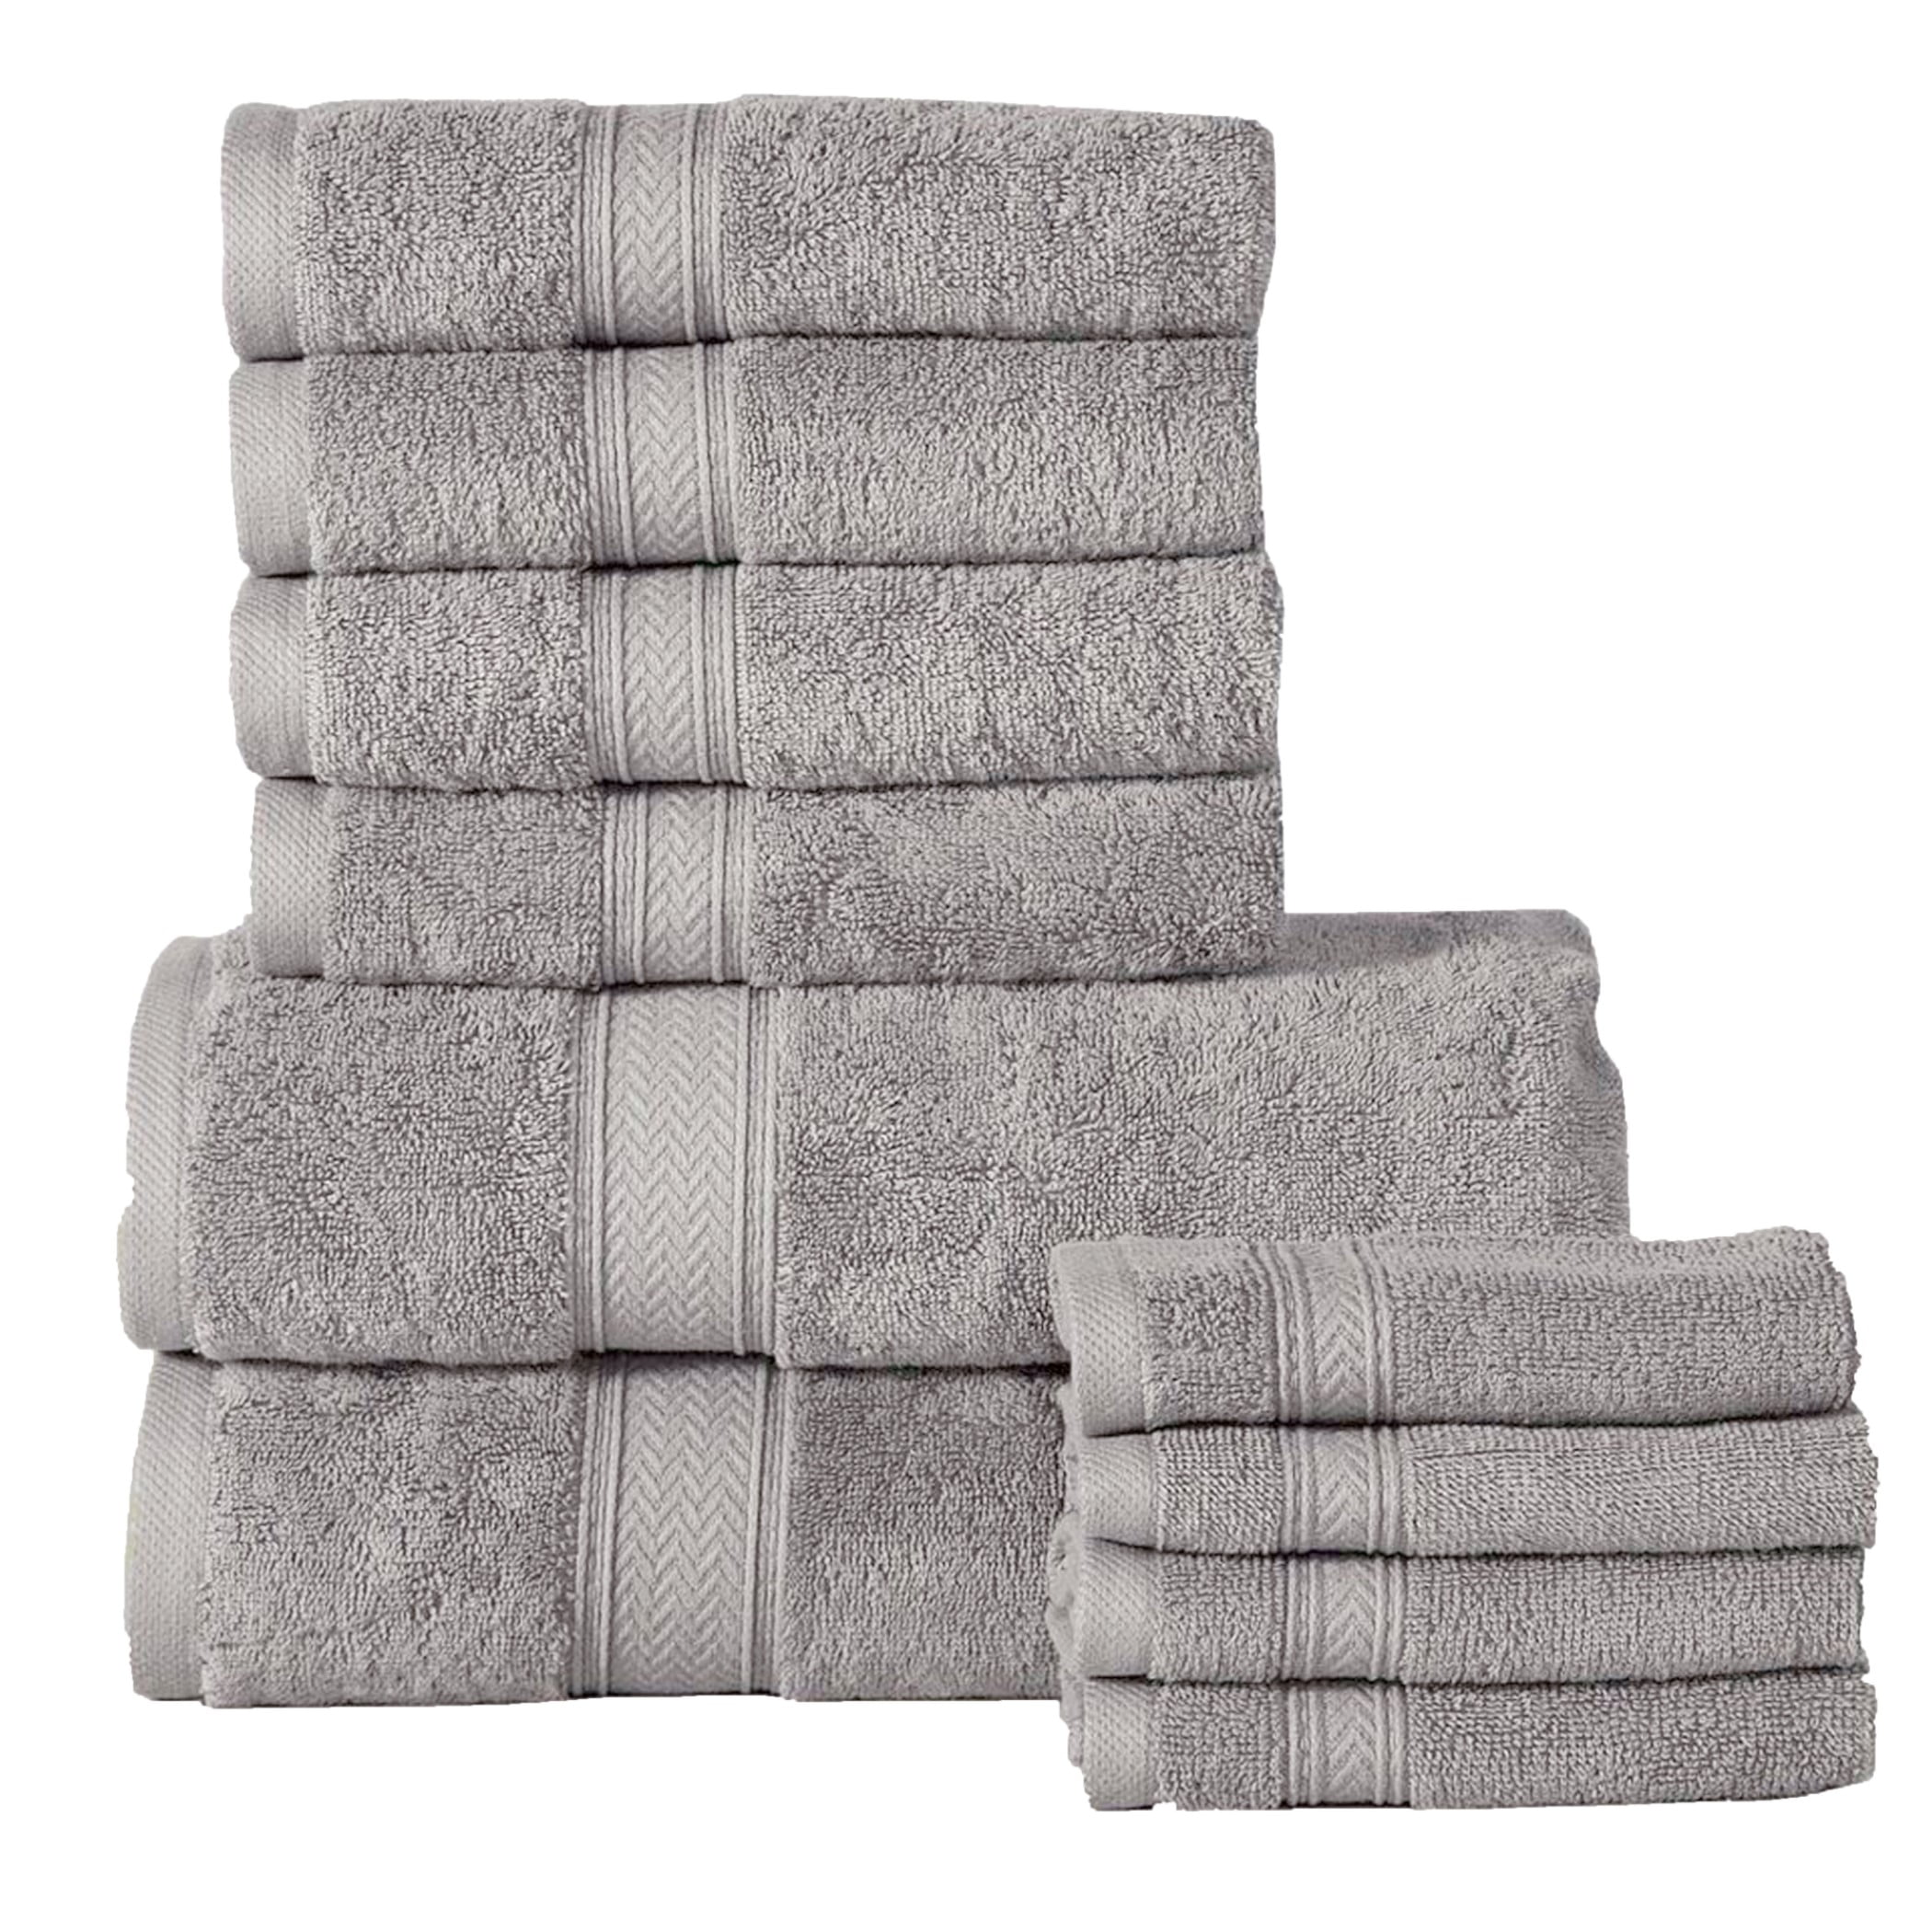 Addy Home Best Value 10-Piece Cotton Bath Towel Set (2 Bath, 4